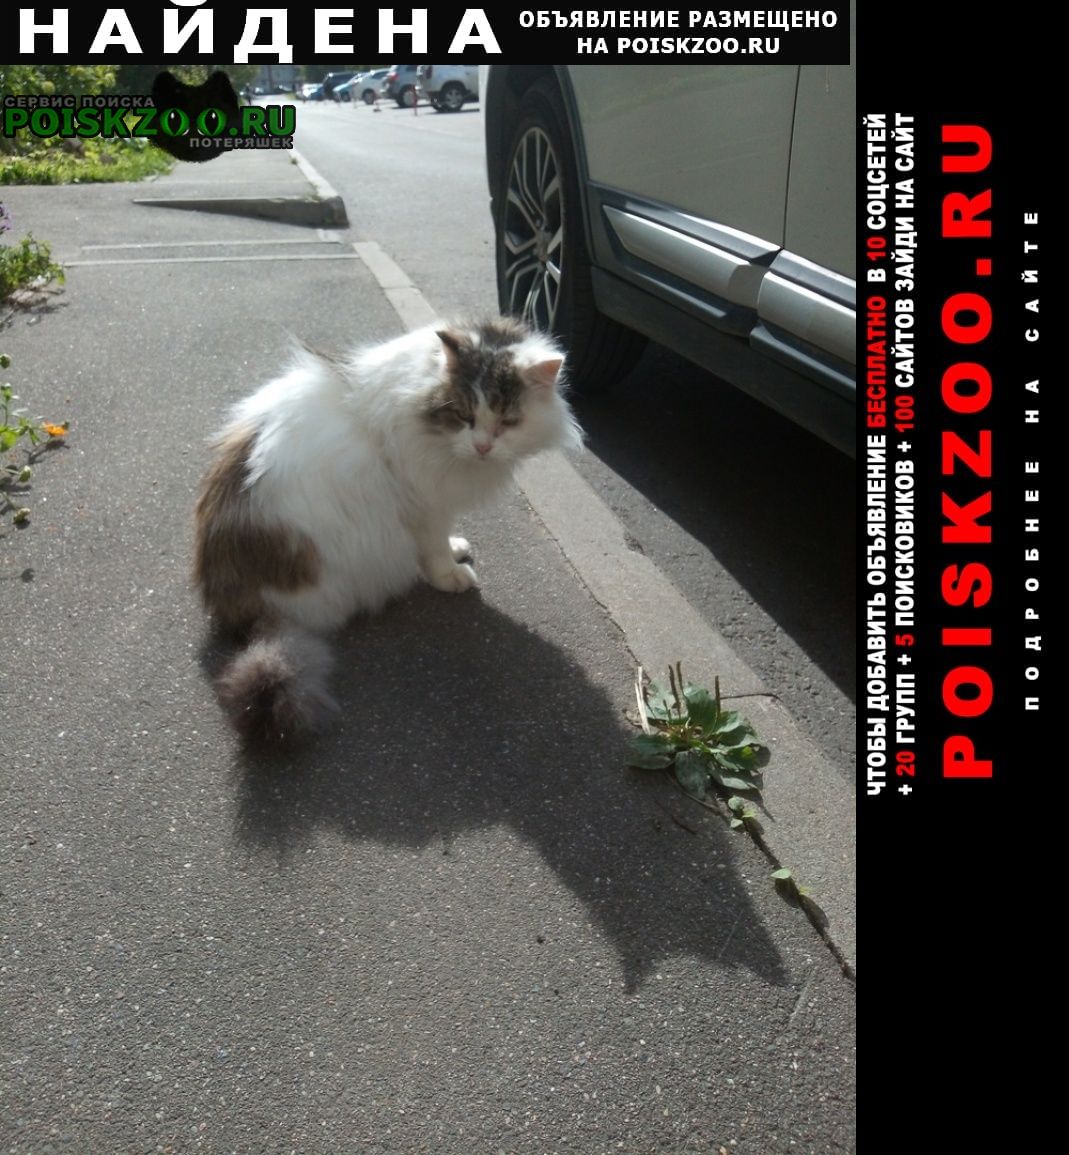 Найден кот во дворе Череповец